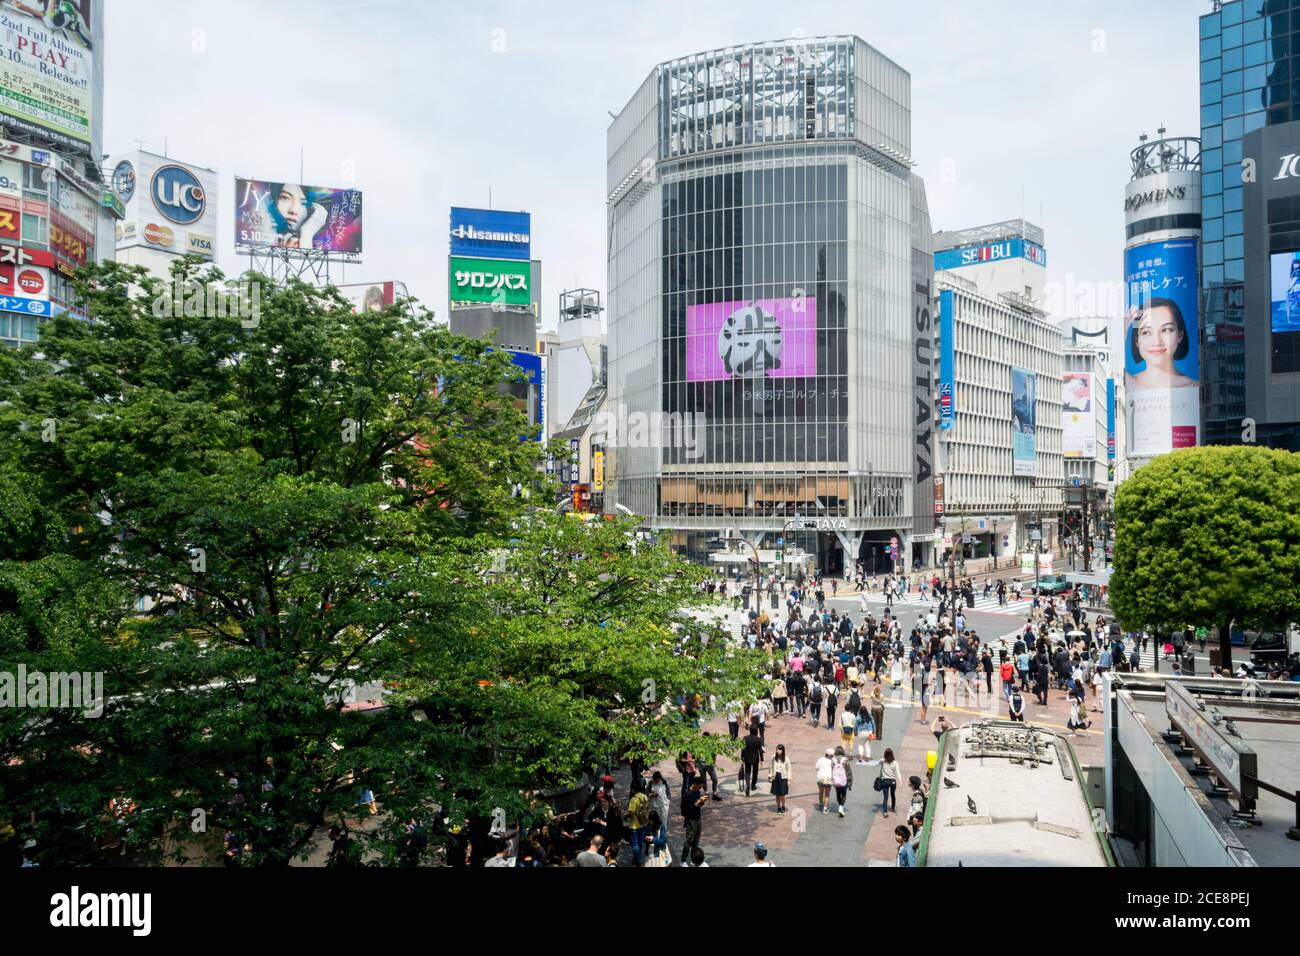 Shibuya, Tokyo, Giappone - Shibuya scramble crossing. Molte persone in una delle aree più trafficate del mondo. Affollato e pieno di pubblicità cartelloni. Foto Stock